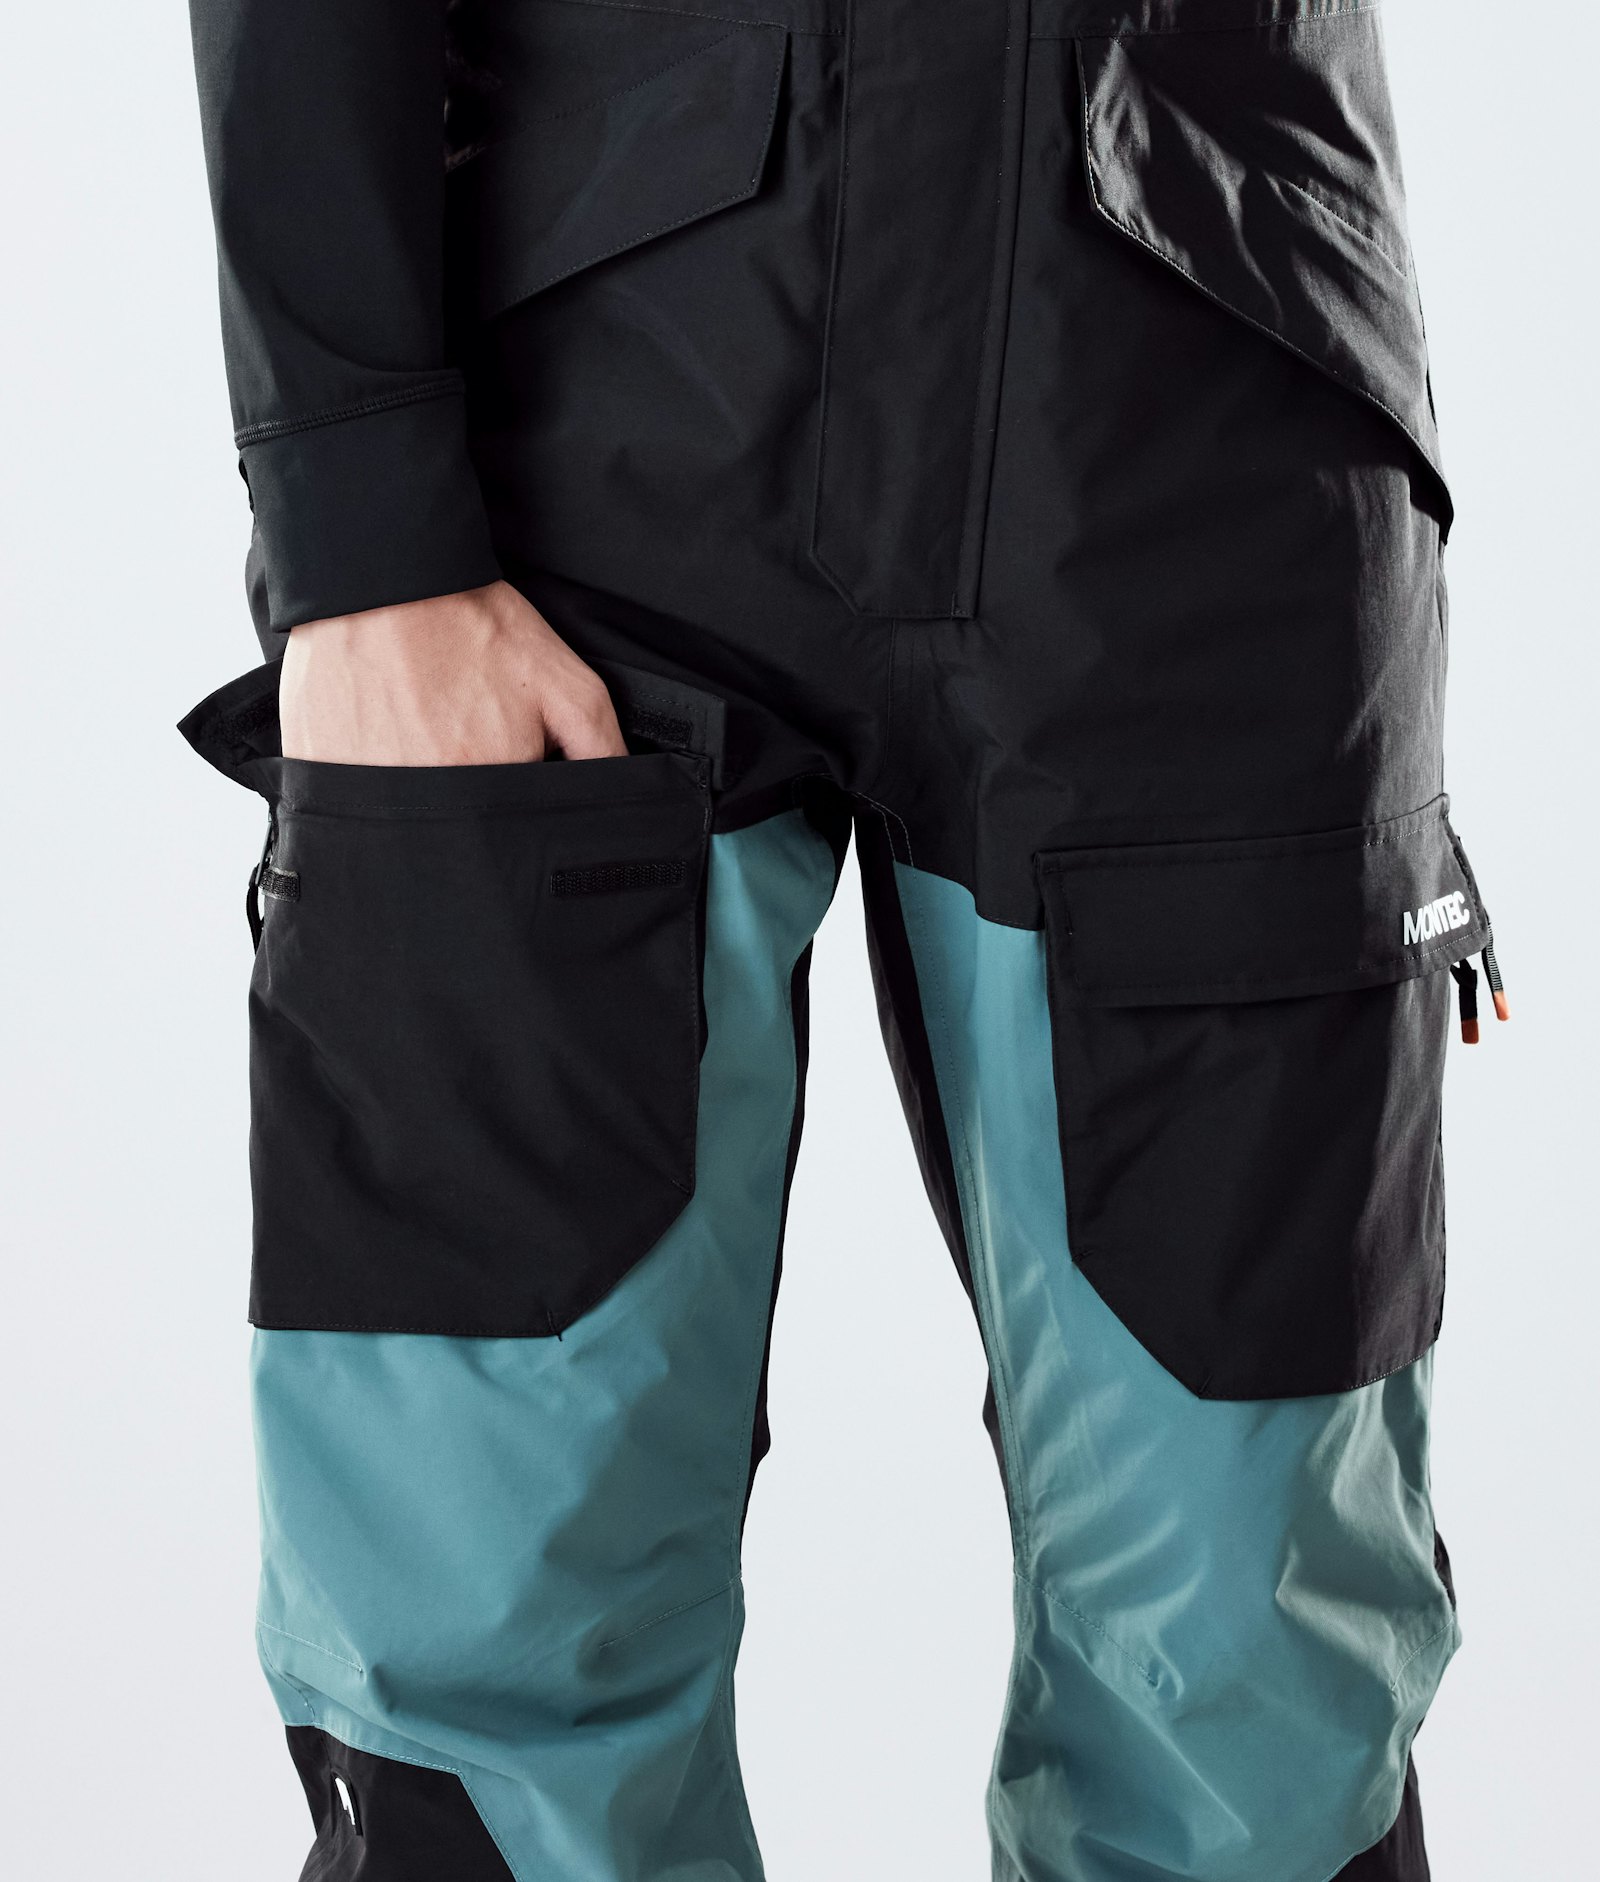 Montec Fawk 2020 Pantalon de Snowboard Homme Black/Atlantic